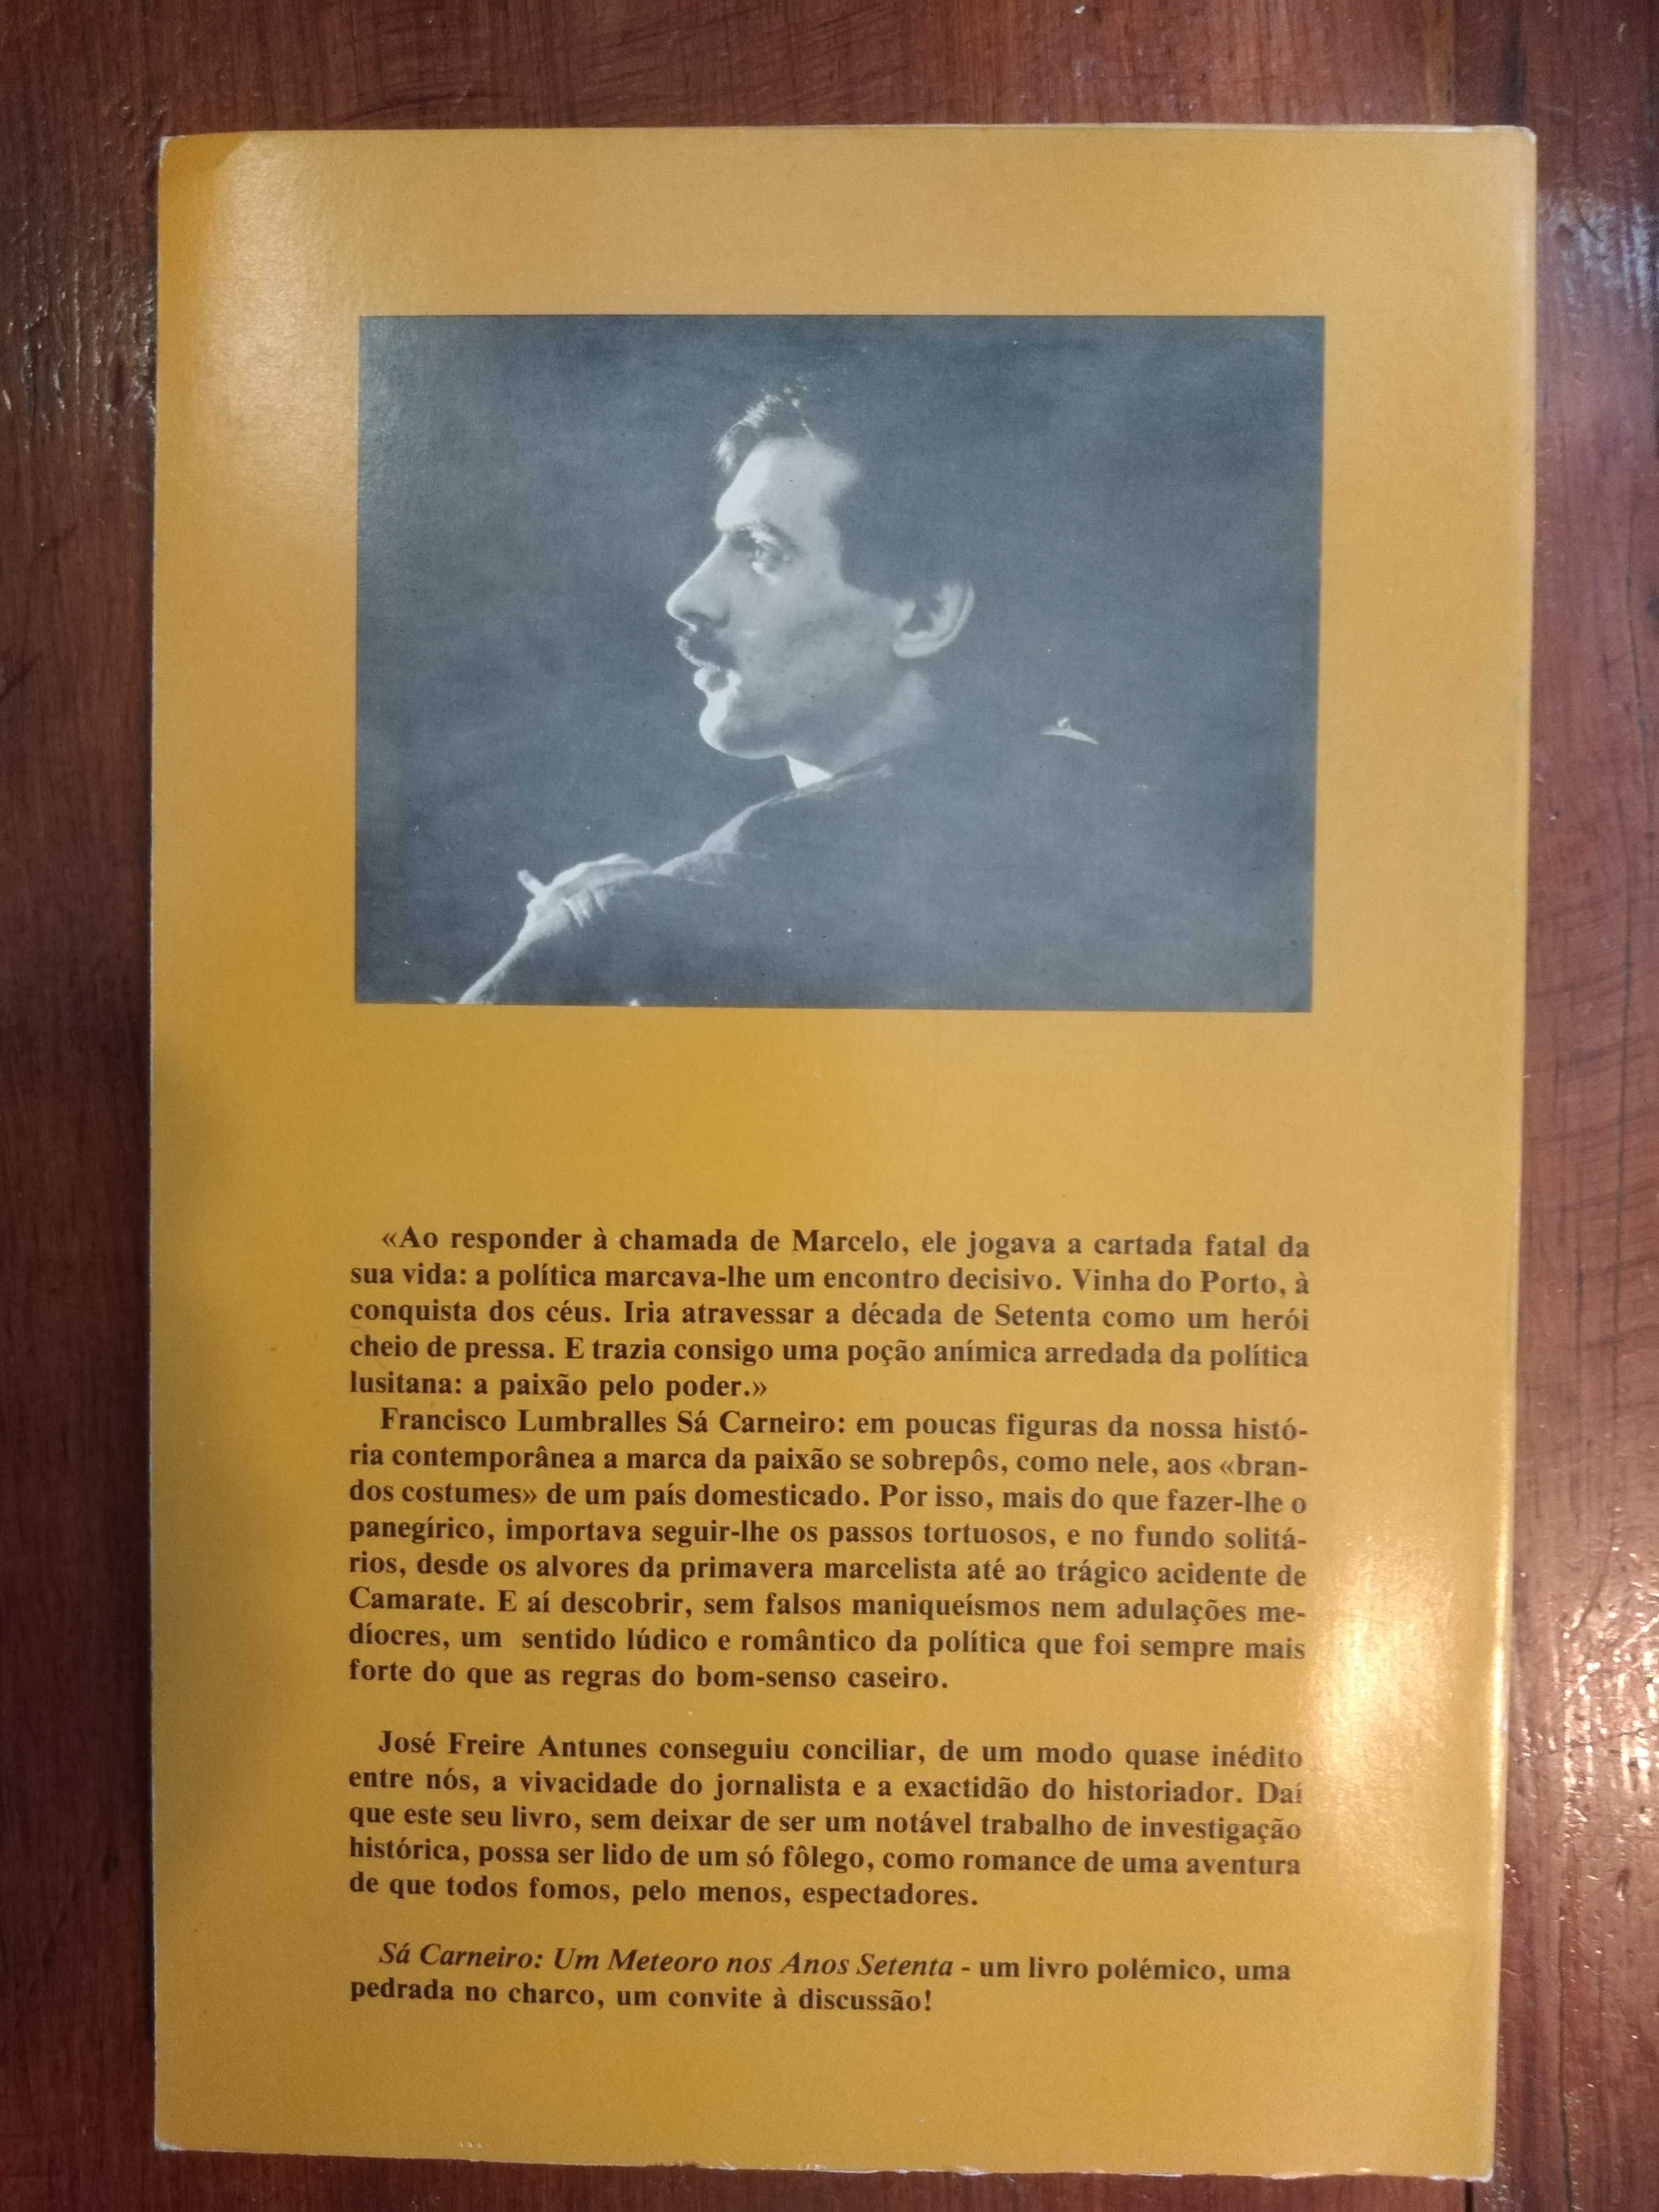 José Freire Antunes - Sá Carneiro, um meteoro nos anos setenta